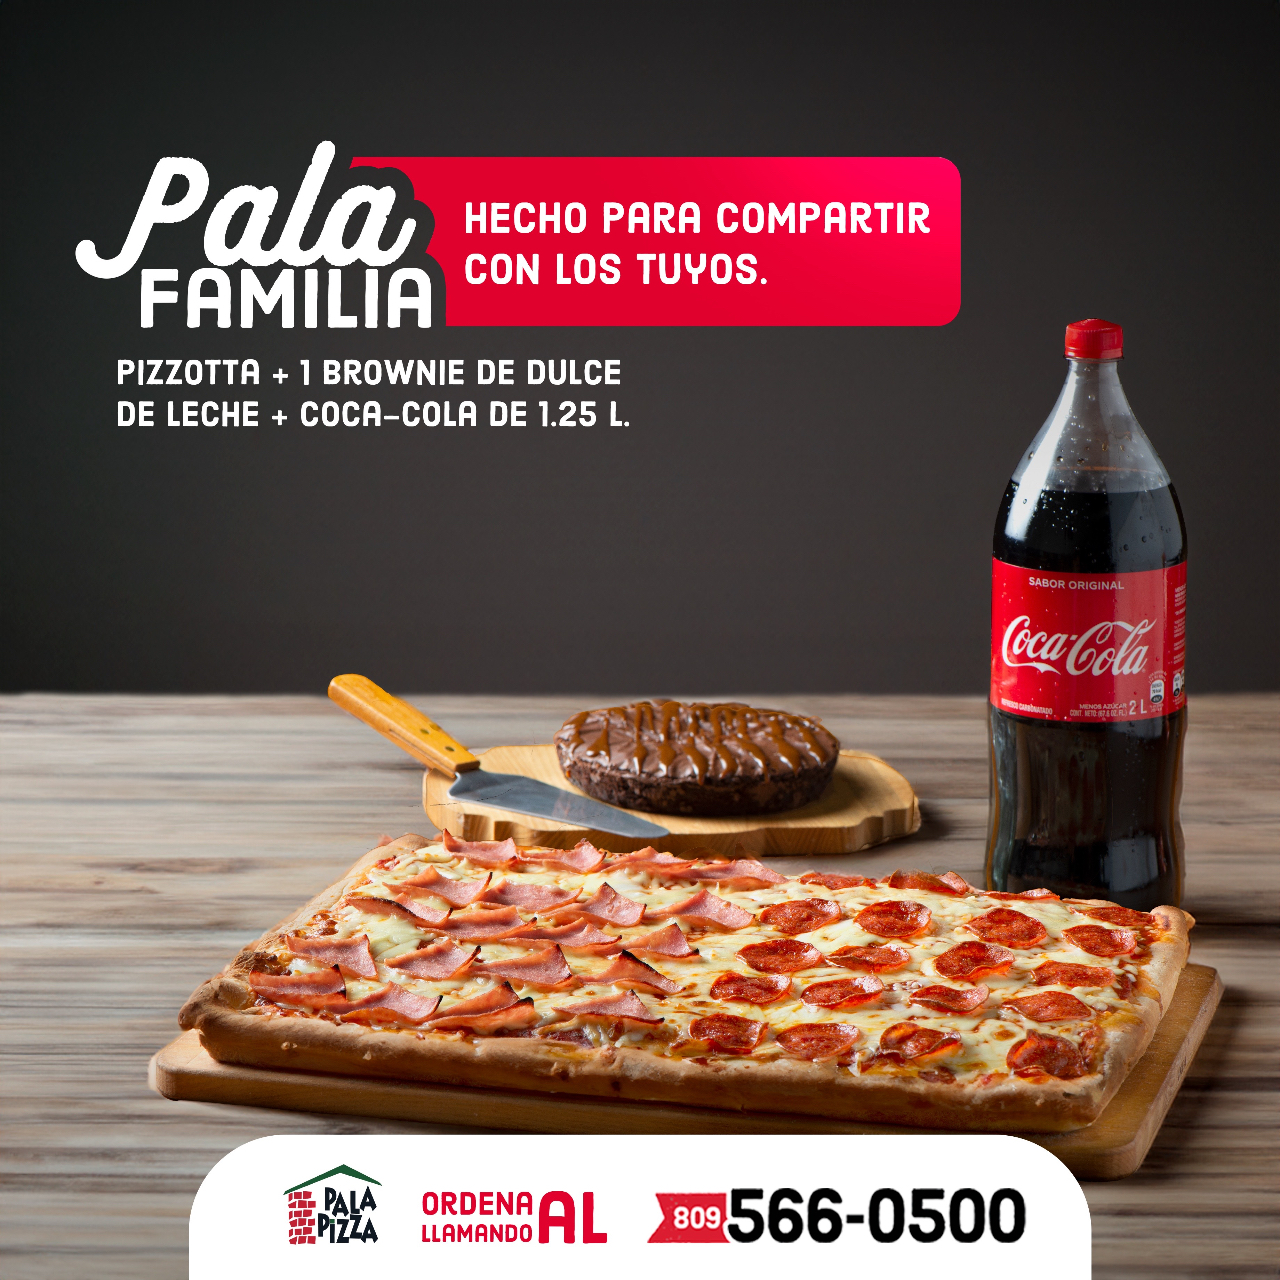 Pala Pizza on X: ¡Pala Familia, un combo pa´ compartir! ▫ Pizzotta de un  ingrediente (16 pedazos) ▫ Brownie de dulce de leche ▫ Coca-Cola de 1.25 L  Por tan solo RD$